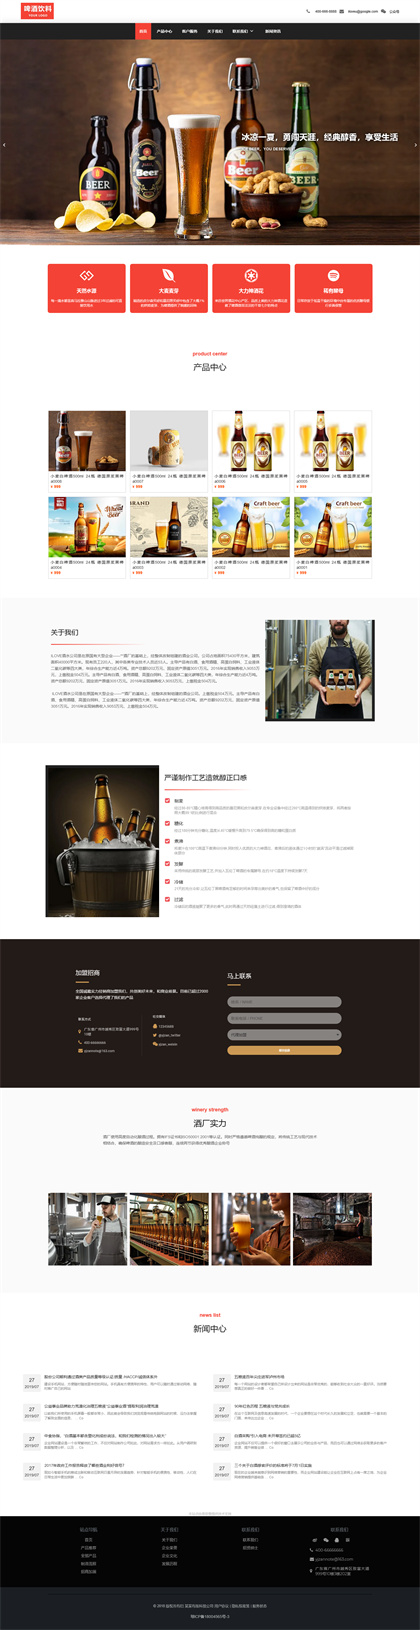 啤酒饮料企业-酒水公司-酒水厂-啤酒厂-饮料公司网站模板网站模板预览图片